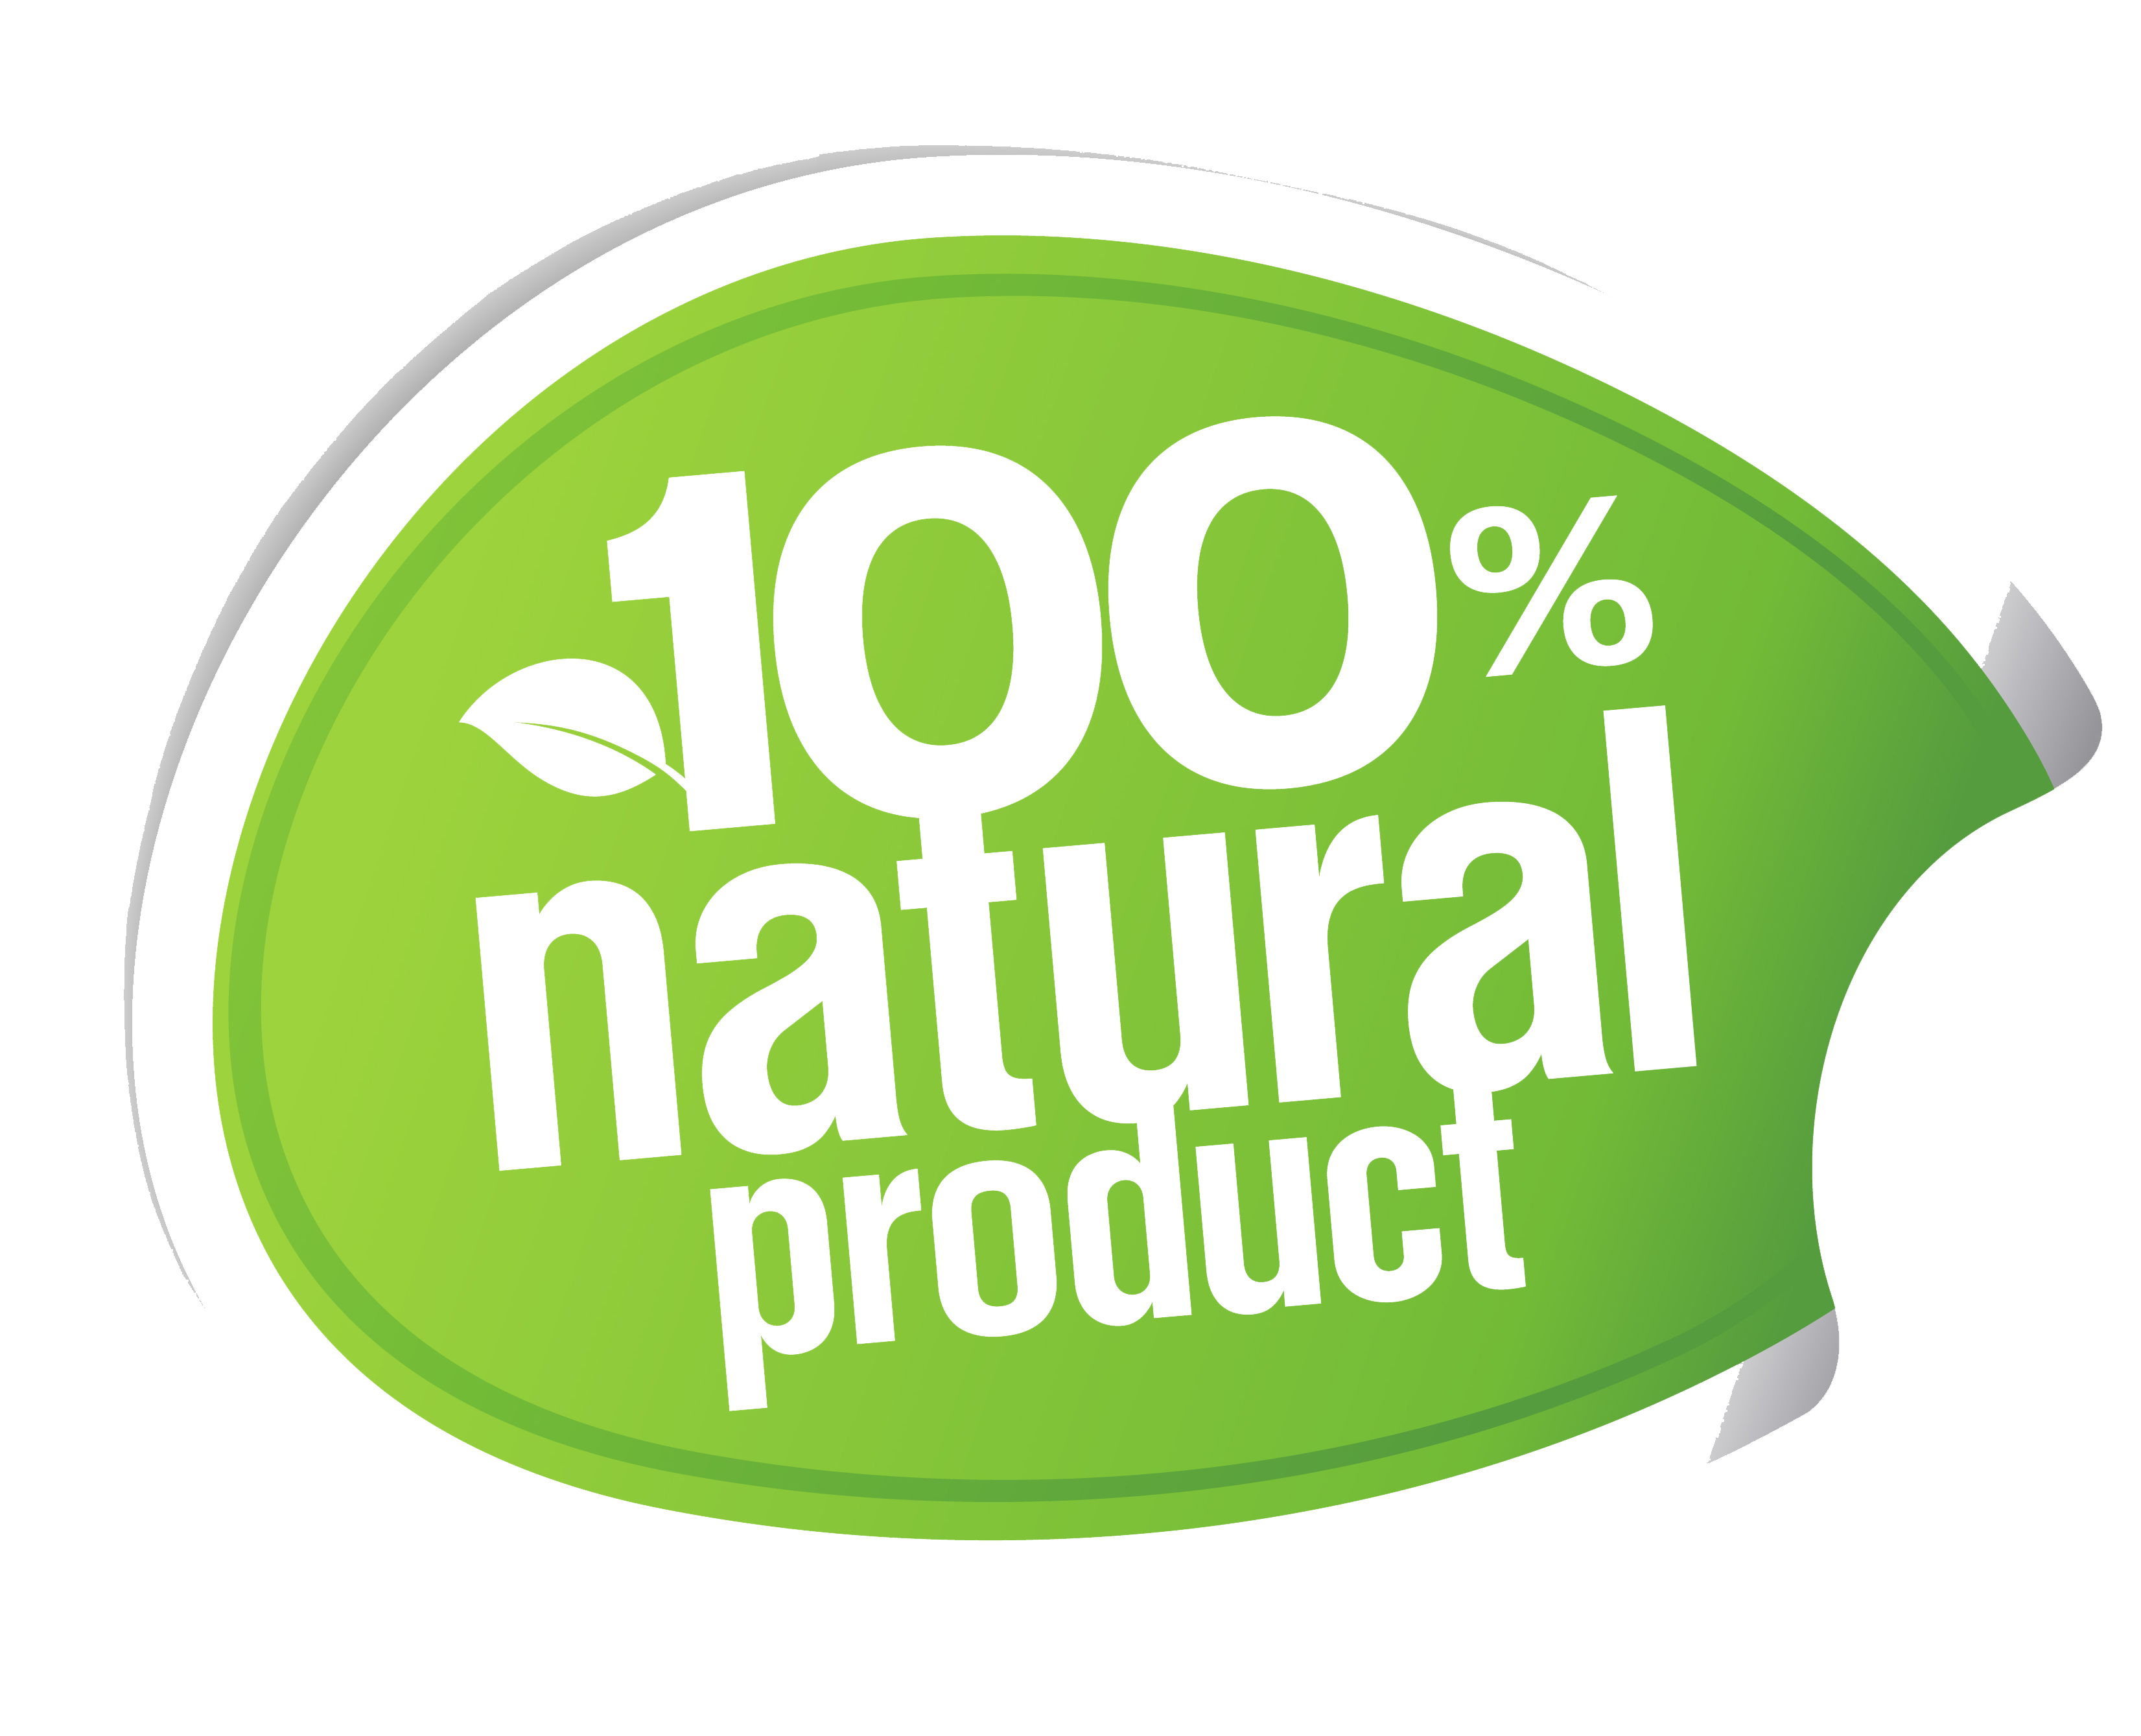 Натуральный продукт. Значок 100 натуральный. Натуральные продукты логотип. Значок натуральности продукта. Out prepared